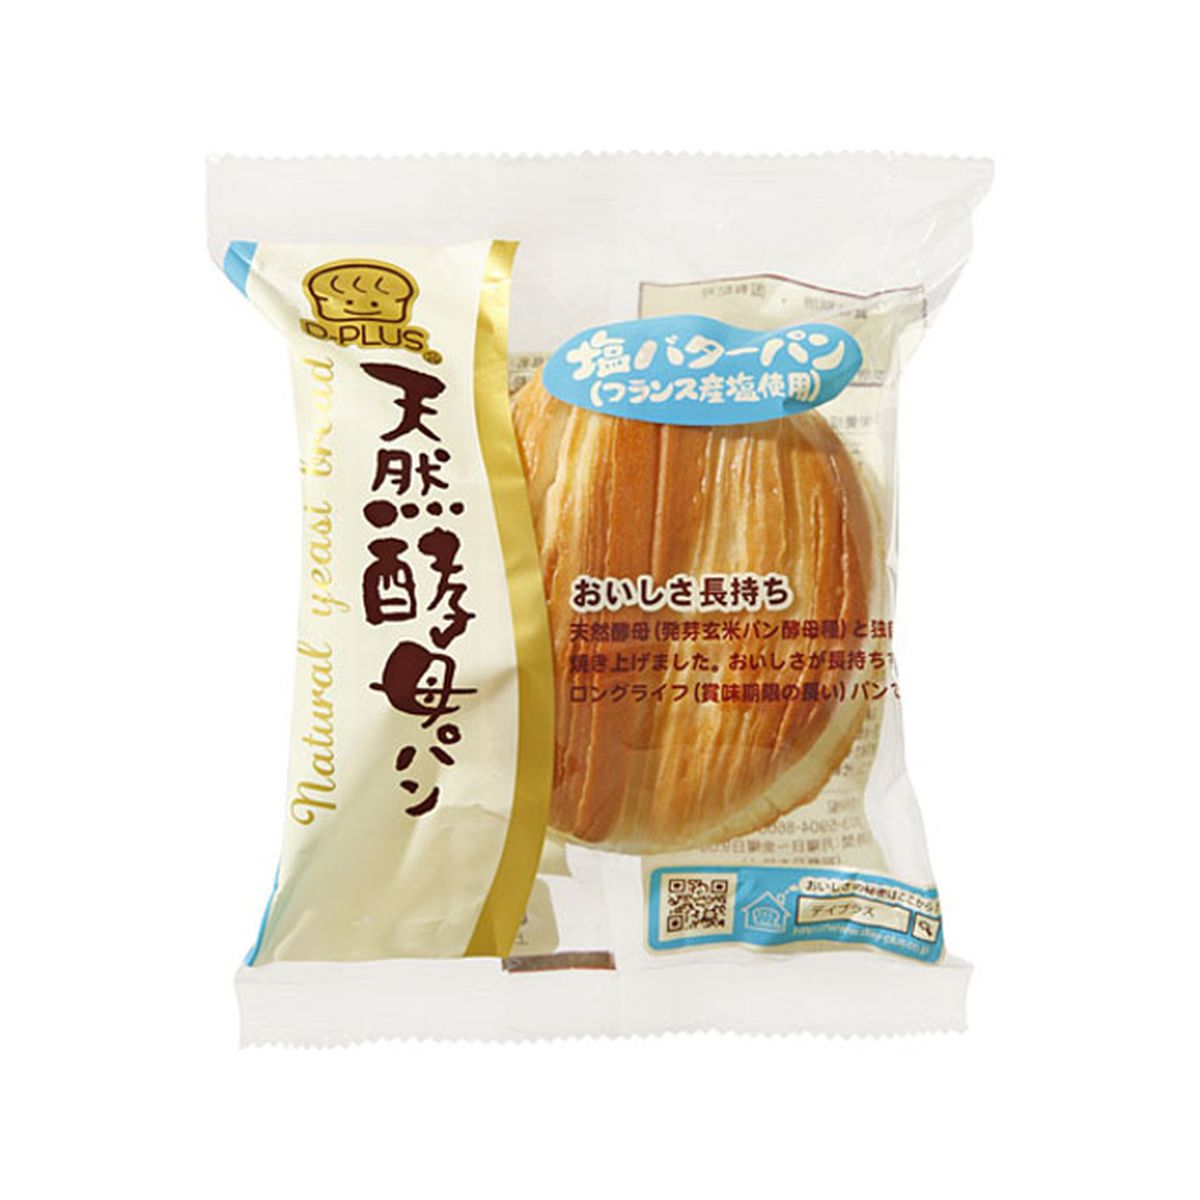 【12個入り】デイプラス 天然酵母パン 塩バターパン 1個